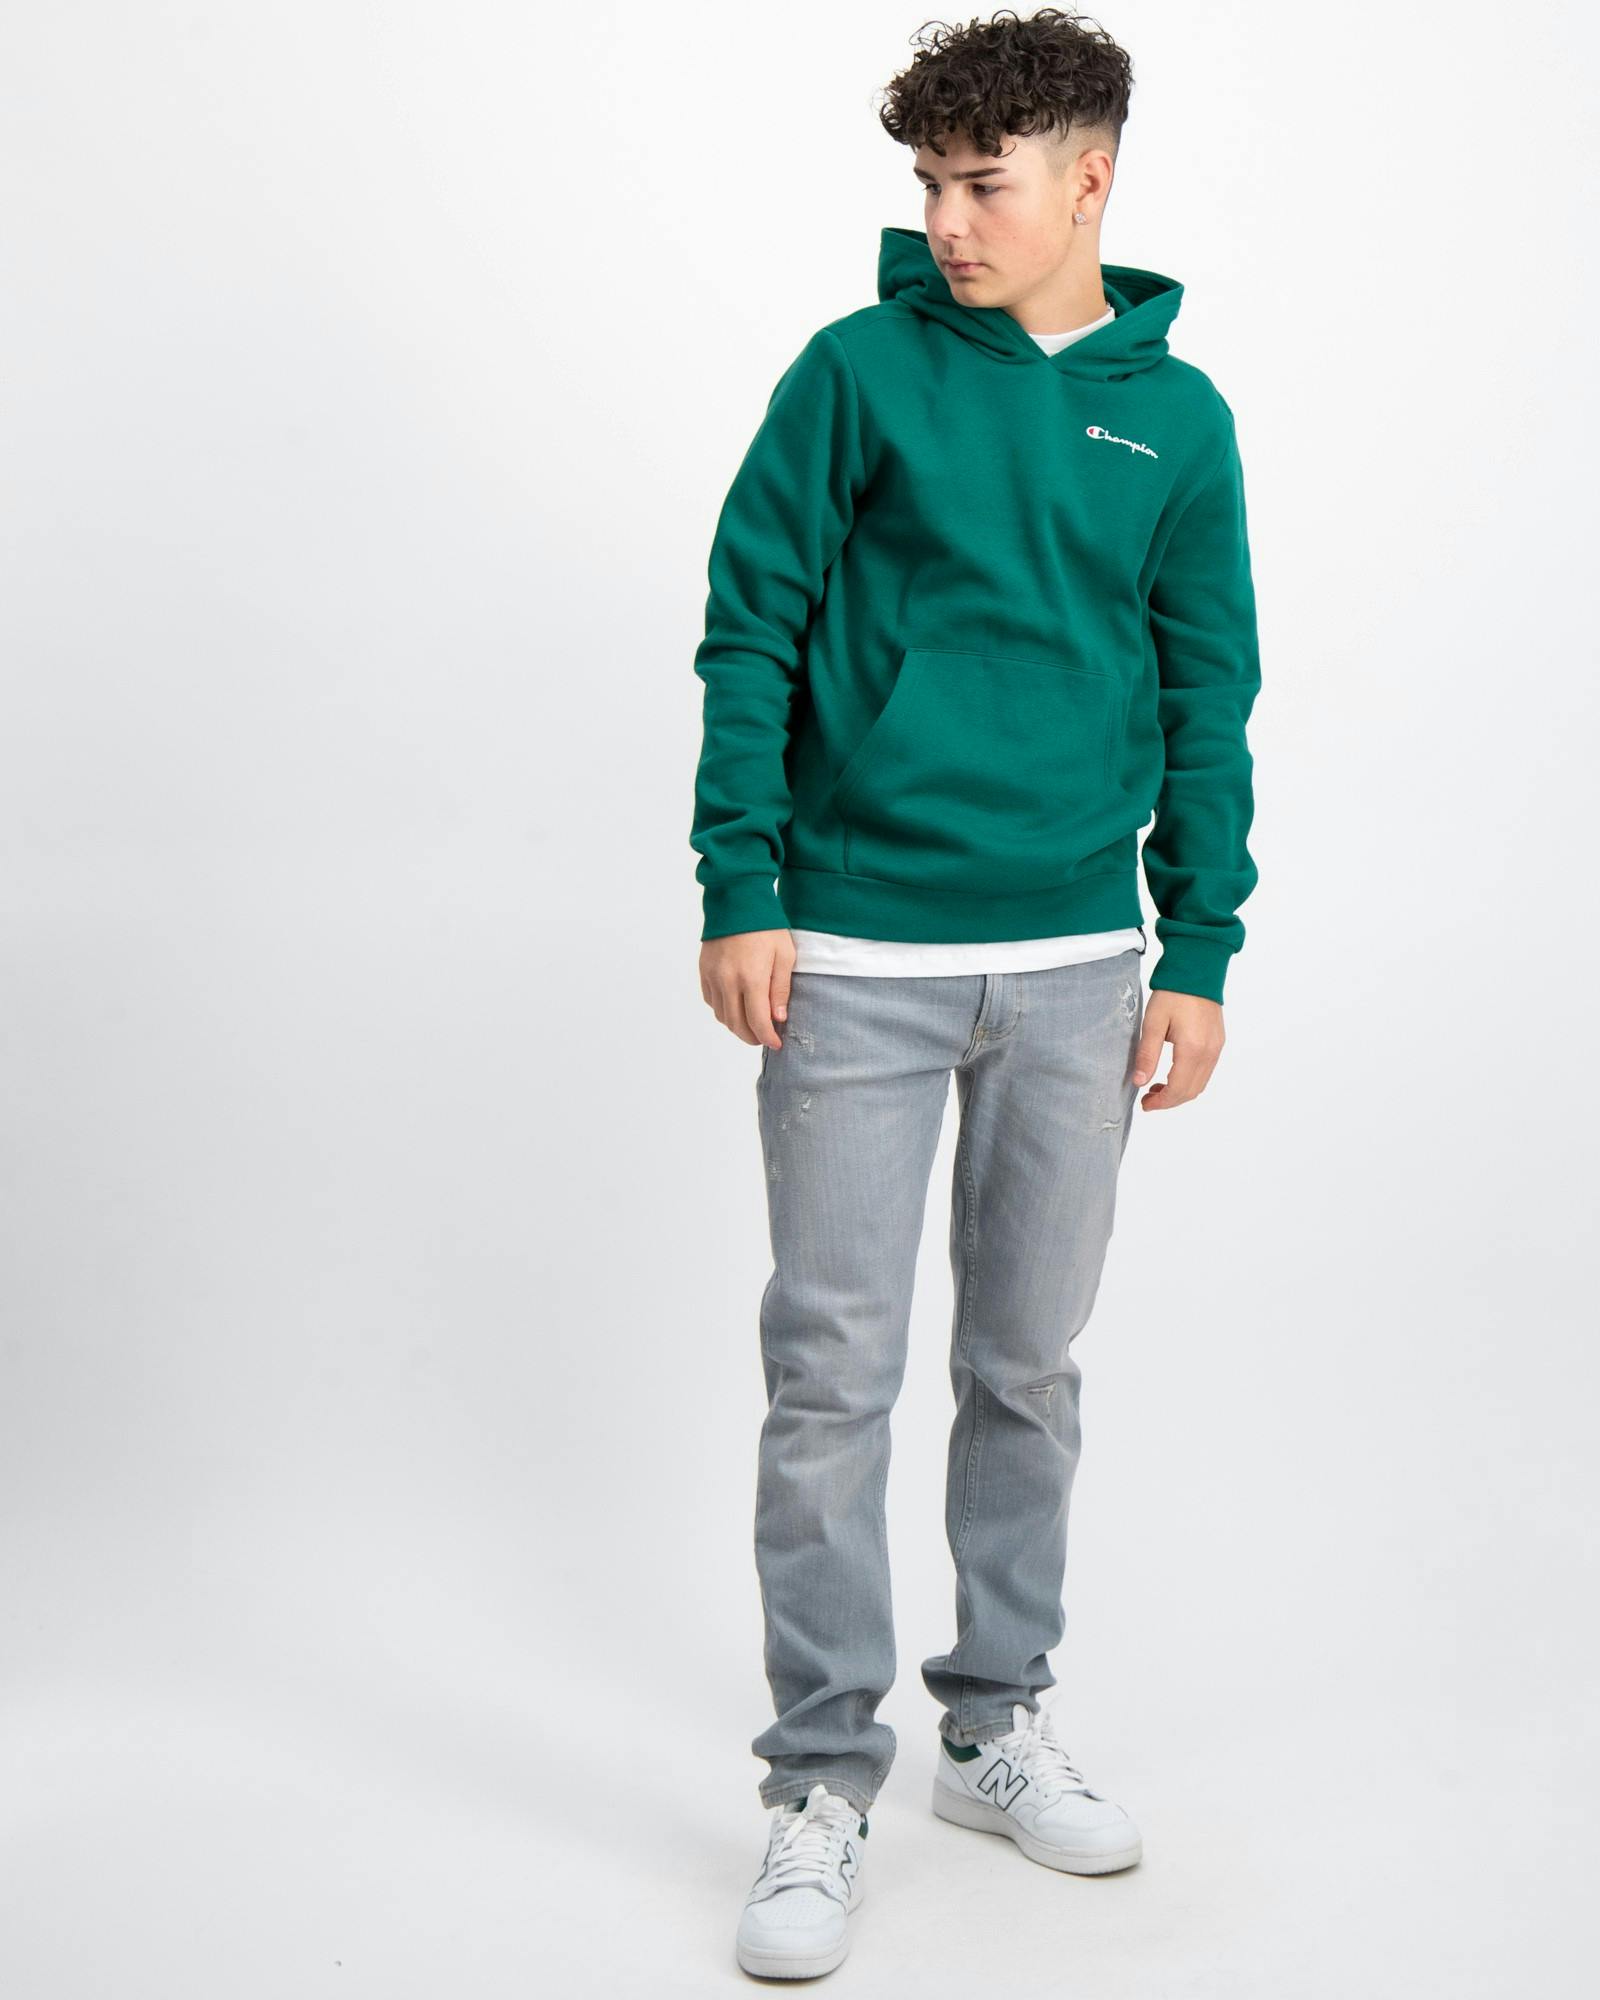 Top-Preis Grün Hooded Sweatshirt für Store Jungen | Brand Kids